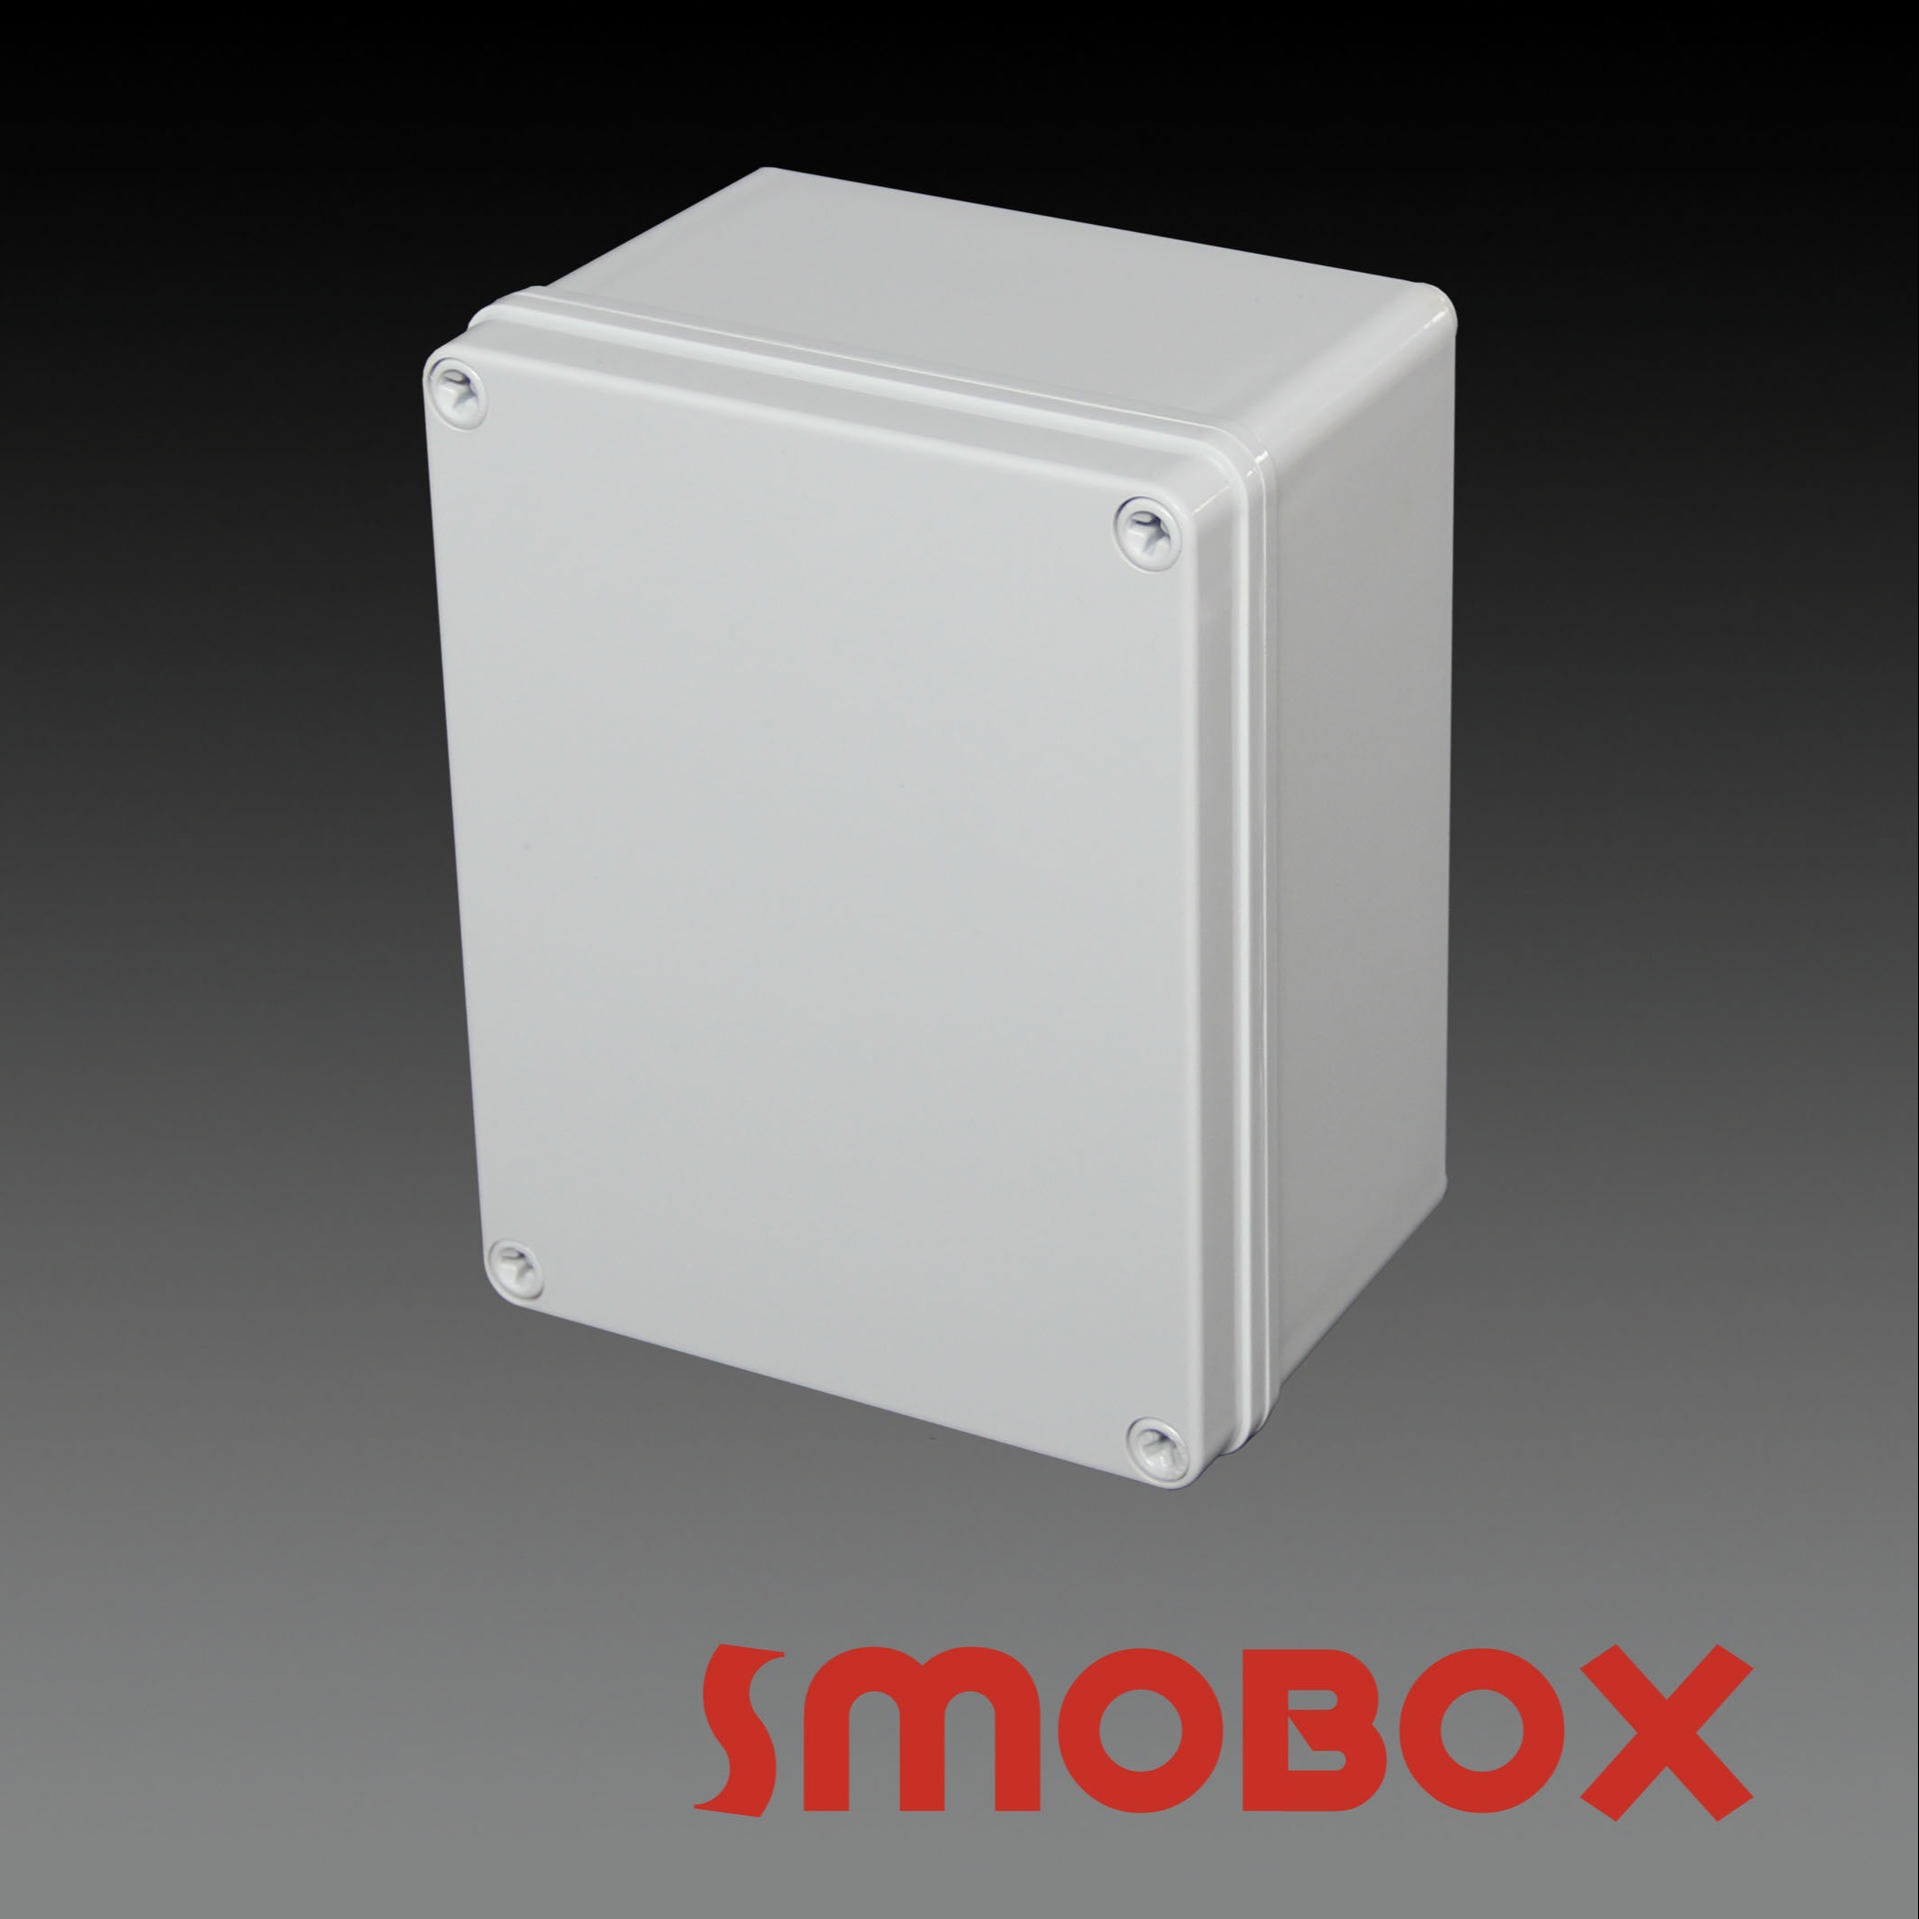 SMOBOX塑料接线箱LD-141709 防水接线盒 塑料按钮盒  防尘防水塑料外壳 仪器仪表外壳